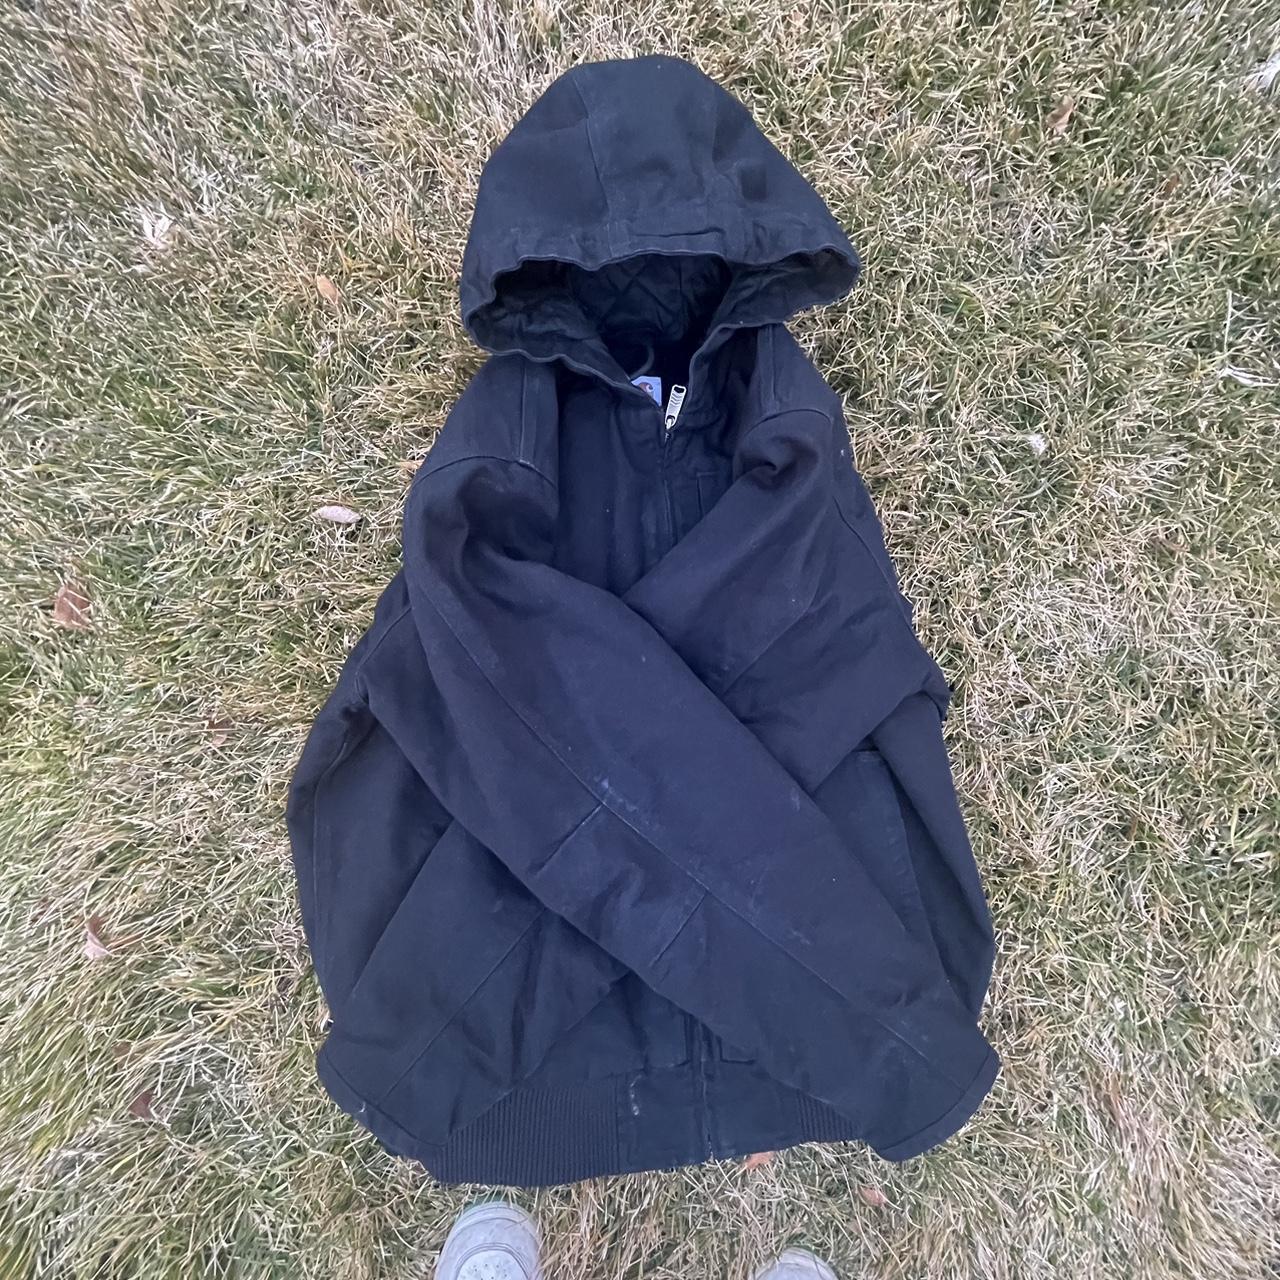 Carhartt Men's Sherpa-Lined Washed Duck Jacket size... - Depop